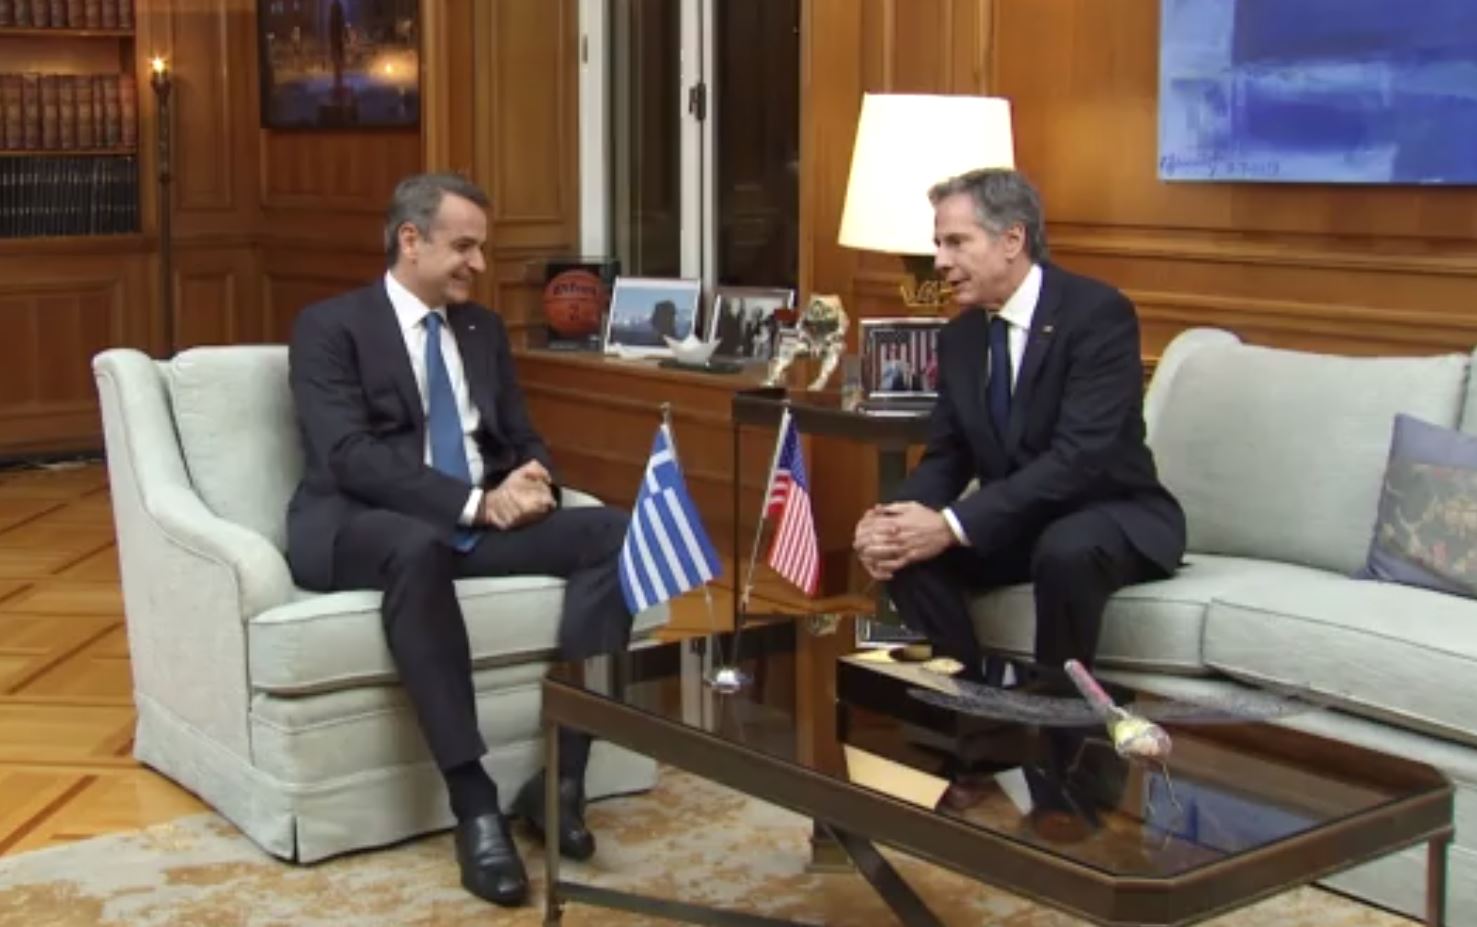 Άντονι Μπλίνκεν: «Μας ενώνει η ιδέα της Δημοκρατίας» είπε για τις σχέσεις Ελλάδας - ΗΠΑ